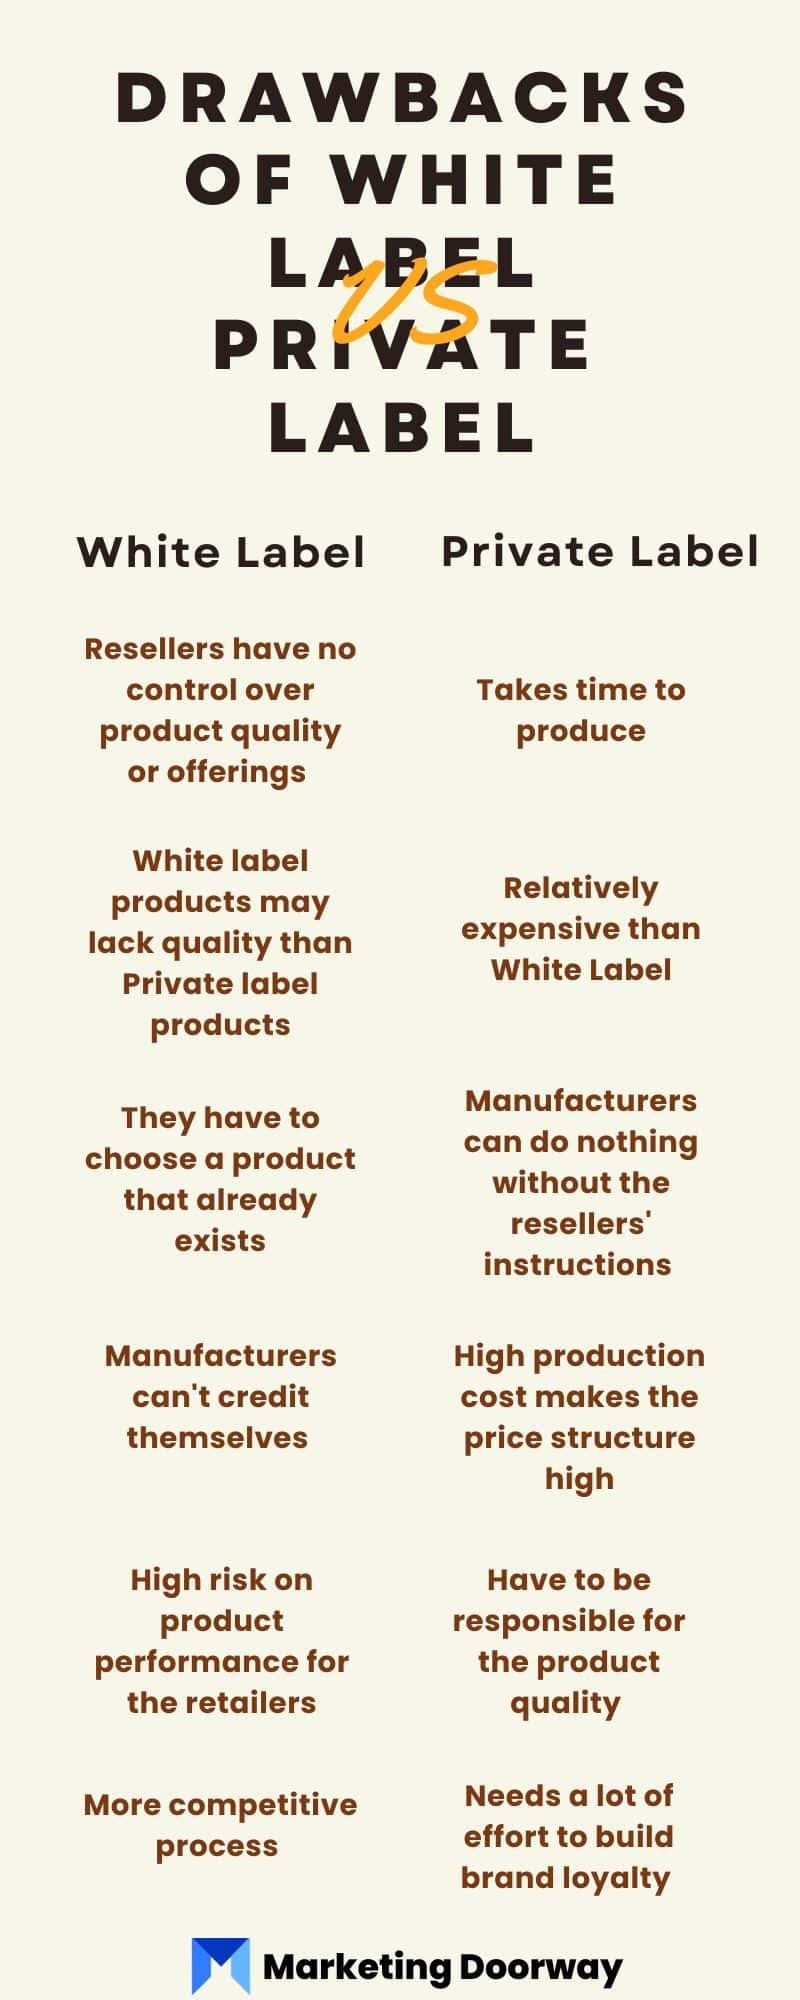 Drawbacks of White label vs Private Label